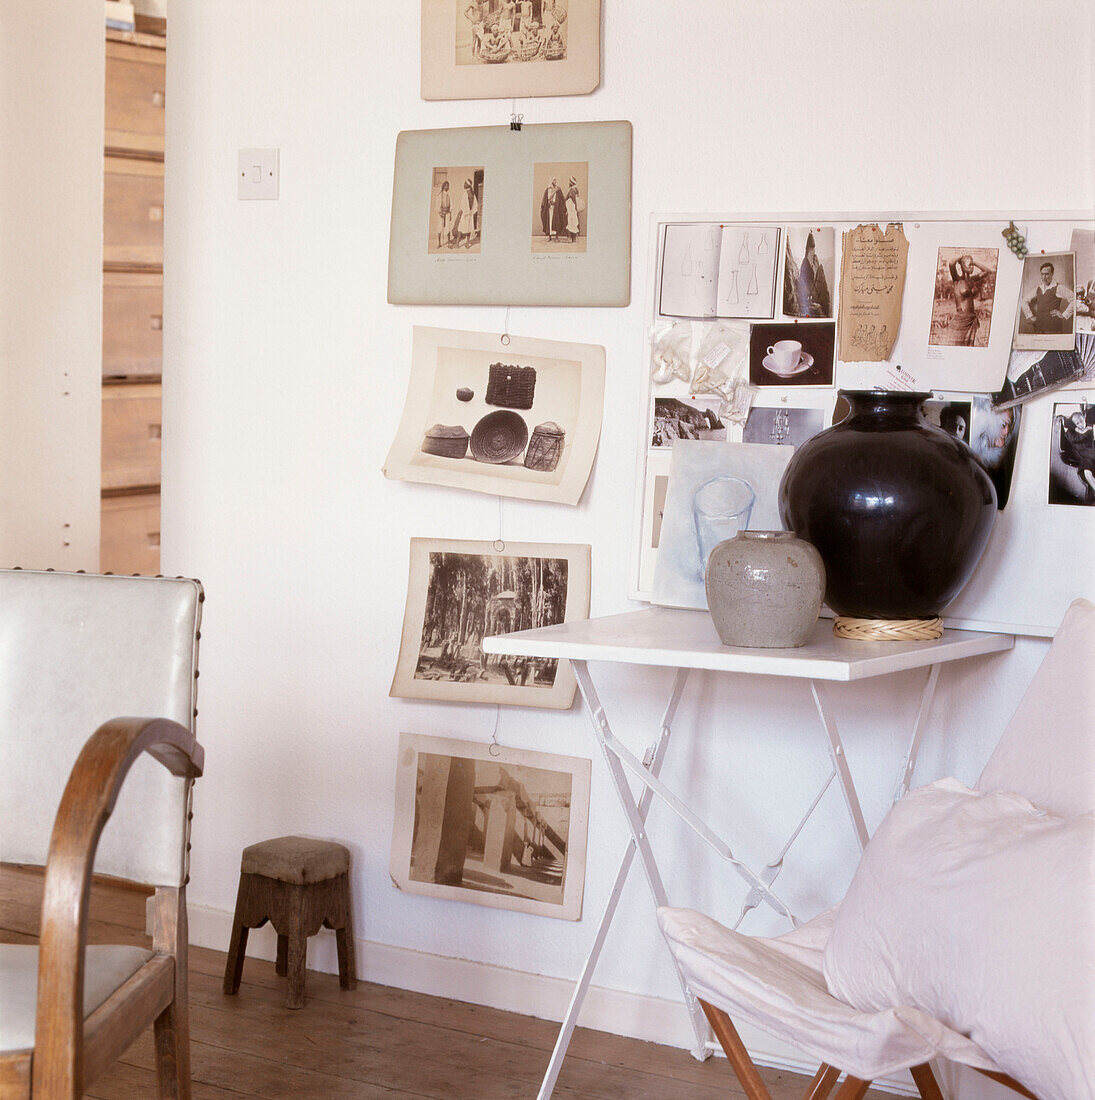 Auslage mit Schwarz-Weiß-Fotografien und Postkarten an einer Wand neben einem Klapptisch mit Töpfen